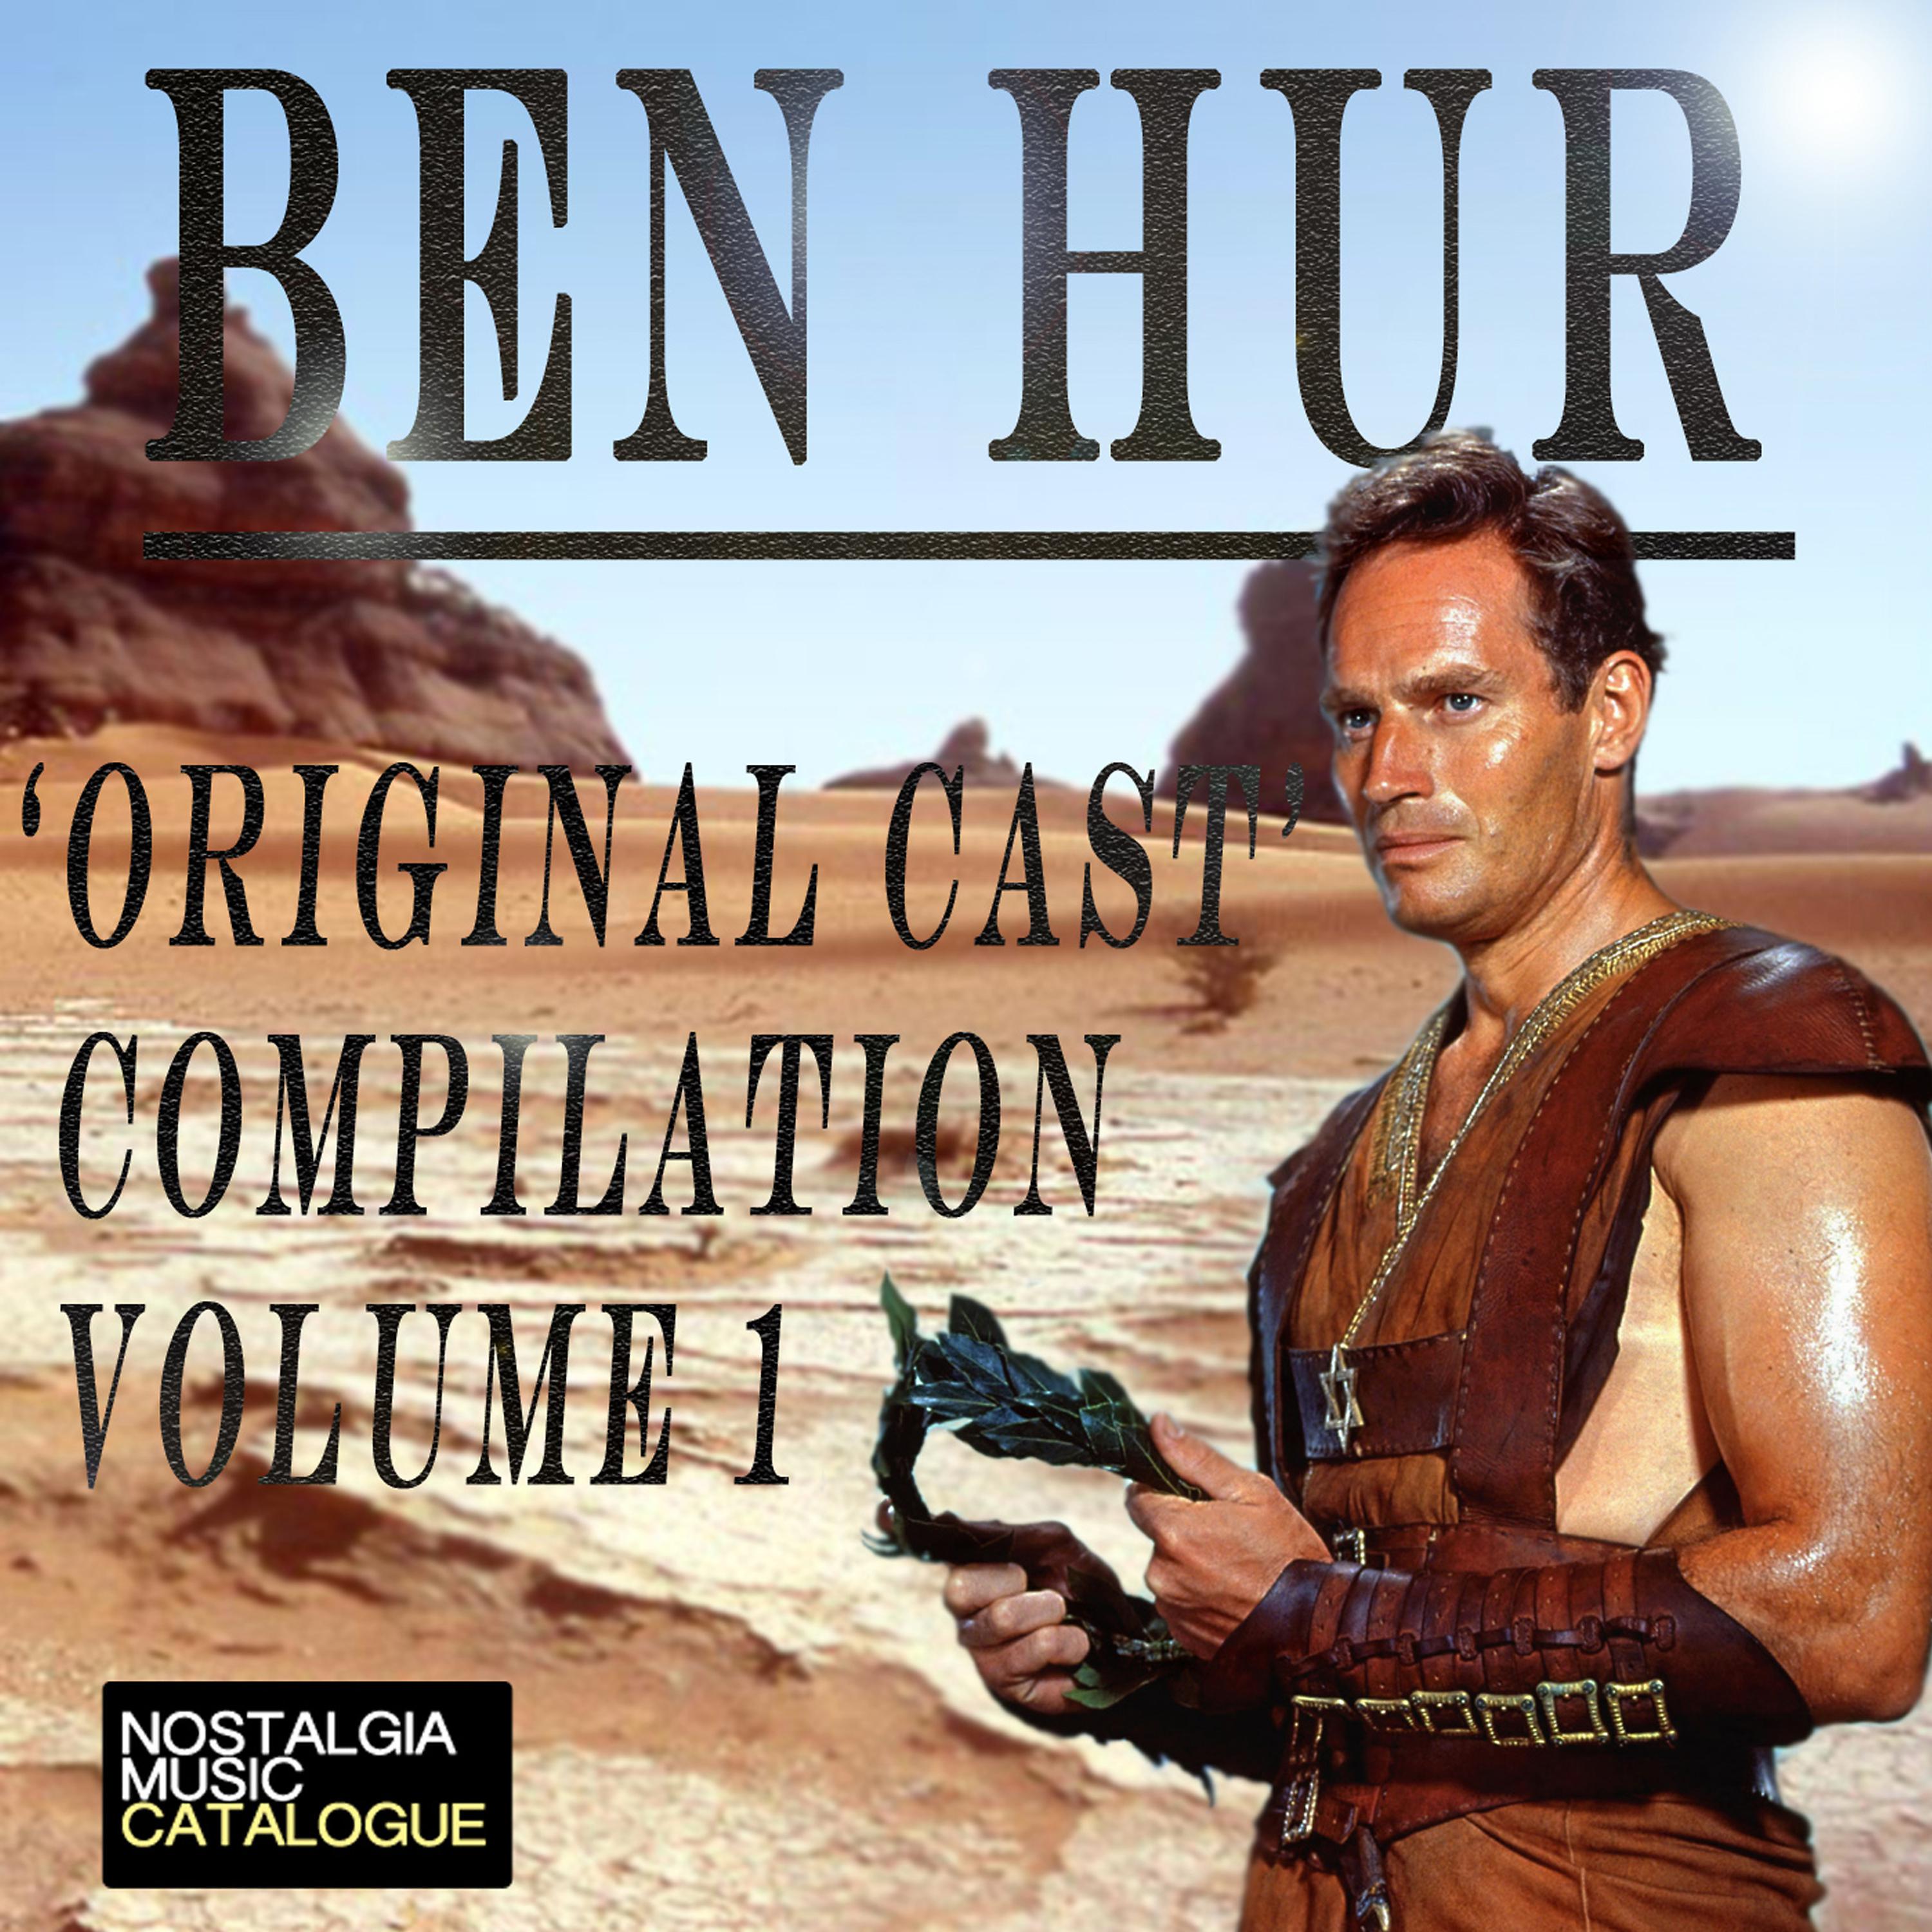 Постер альбома 'Ben Hur Original Cast' Compilation Volume I